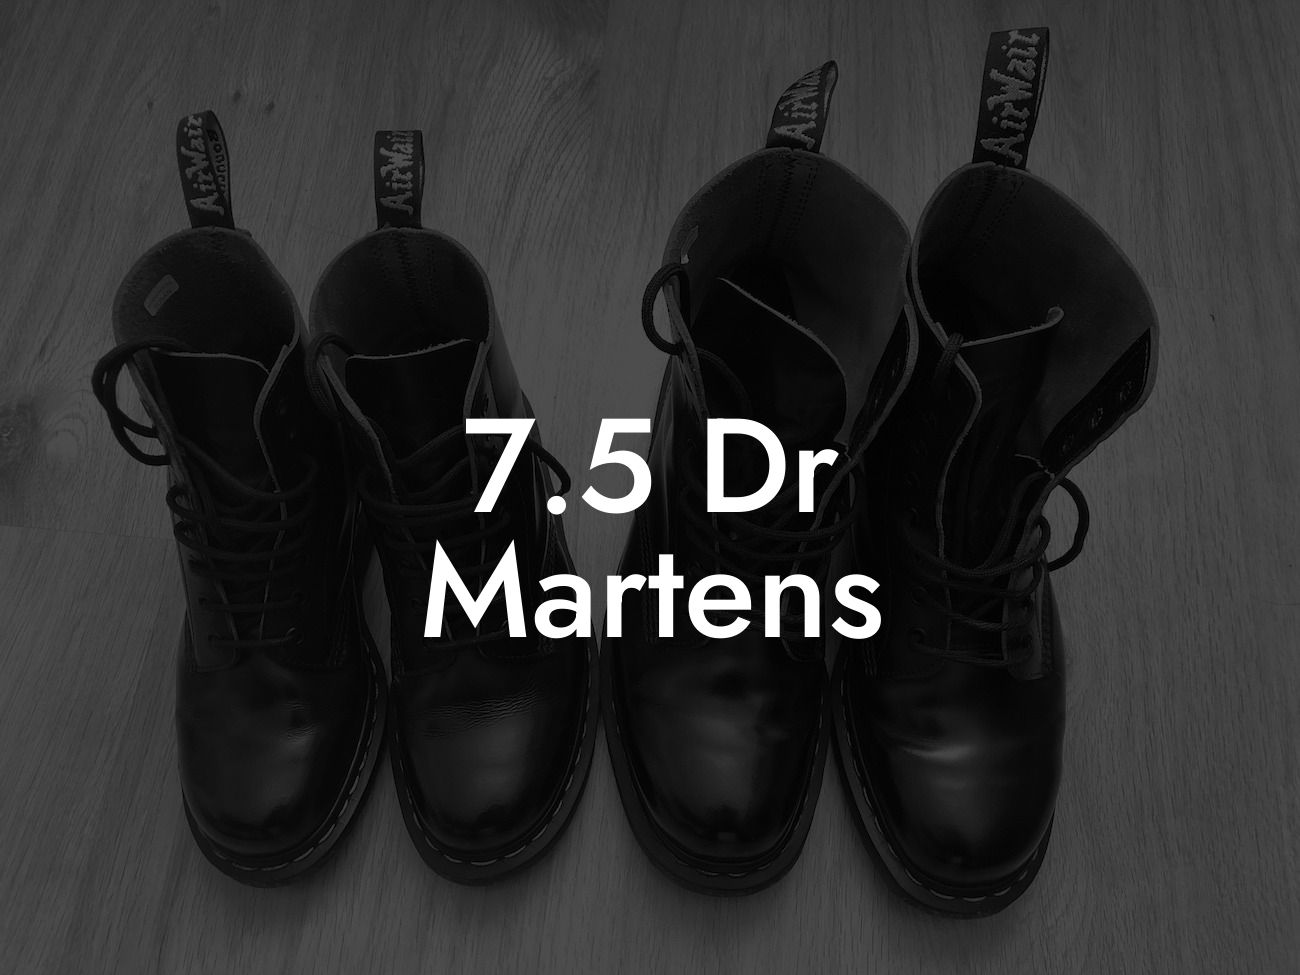 7.5 Dr Martens